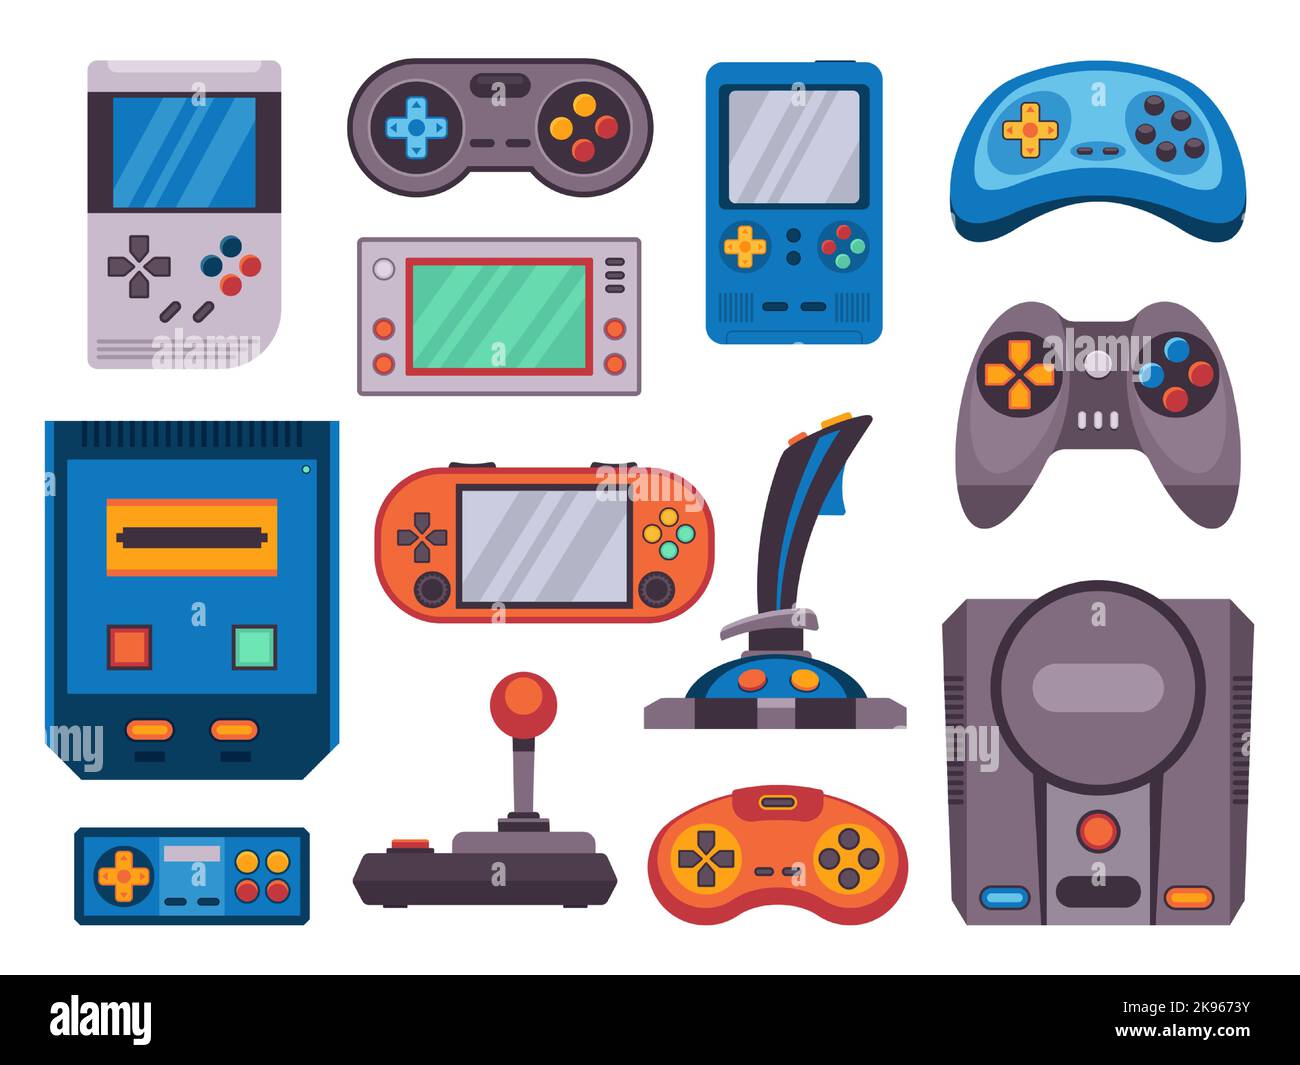 Console di gioco retro. Icone joystick per videogiochi Cartoon, moderni dispositivi portatili wireless per console video analogici gamepad per i gamer geek. Set vettoriale Illustrazione Vettoriale